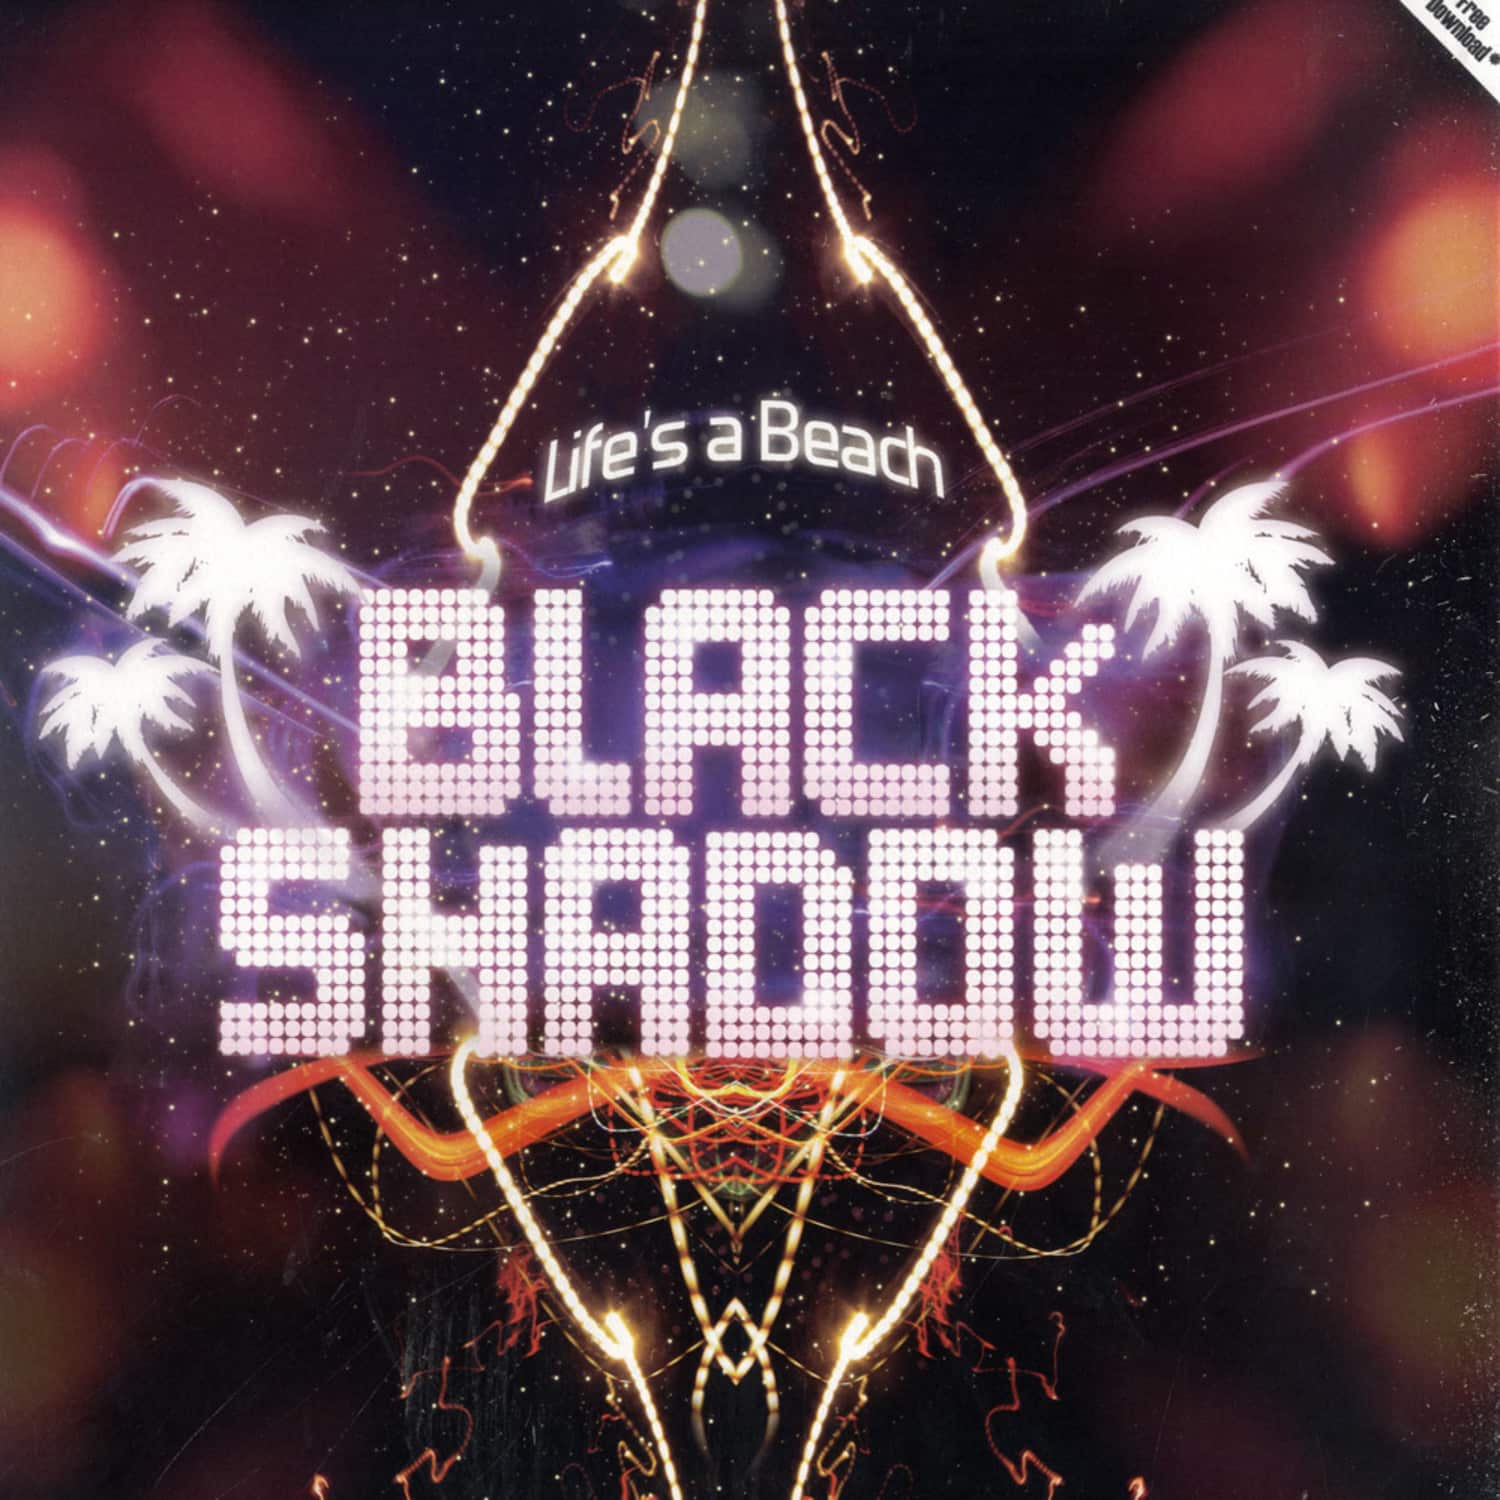 Black Shadow - LIFES A BEACH